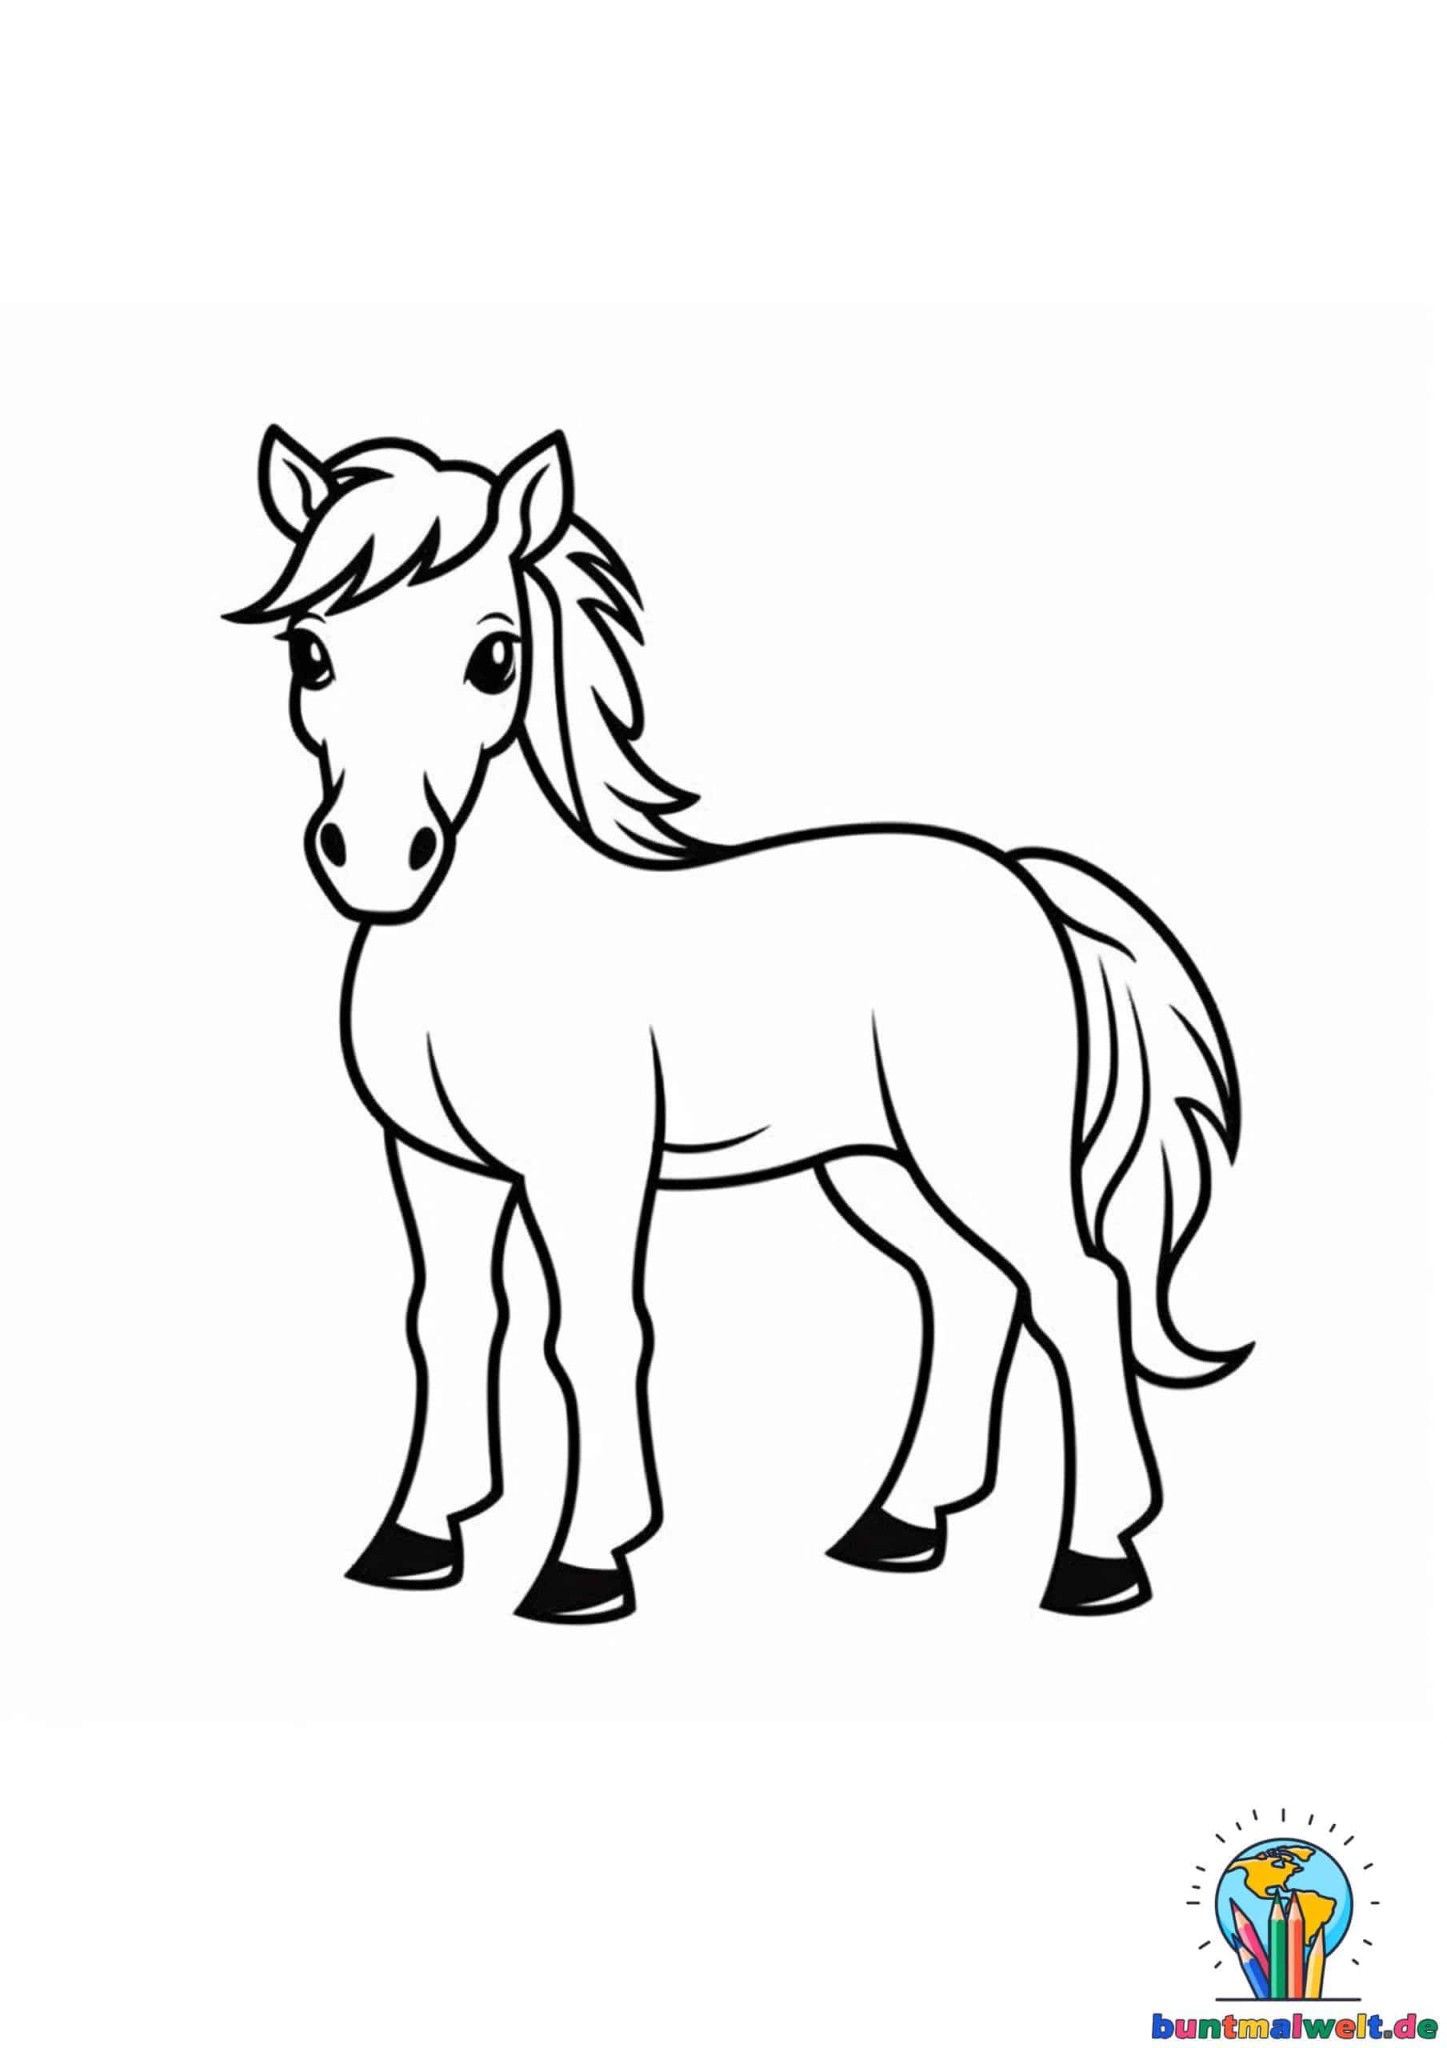 Ausmalbilder von einzelnen Pferden zum kostenlosen Downloaden